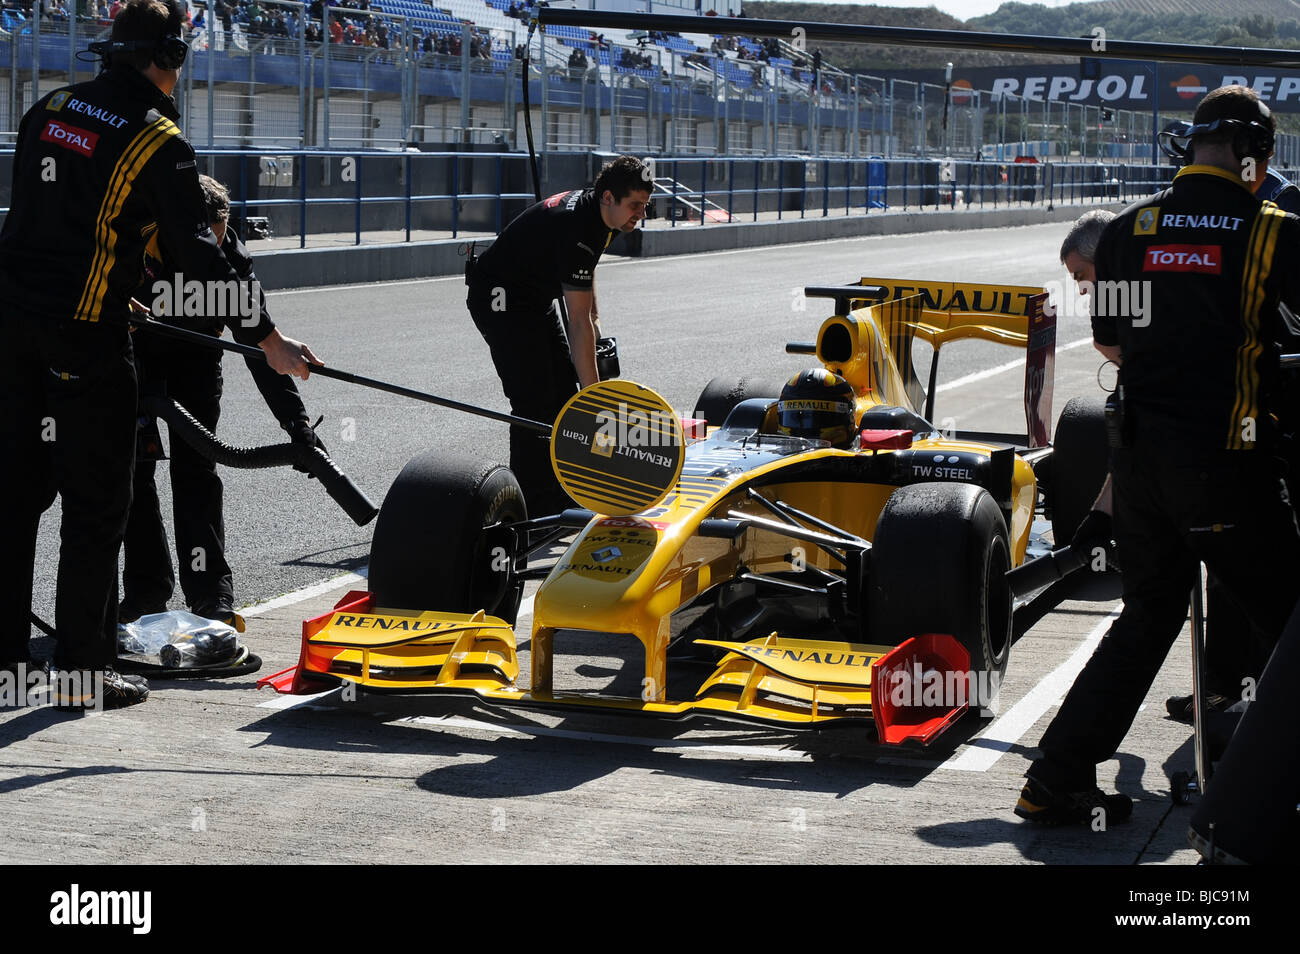 F1 Fórmula 1 Renault Foto de stock